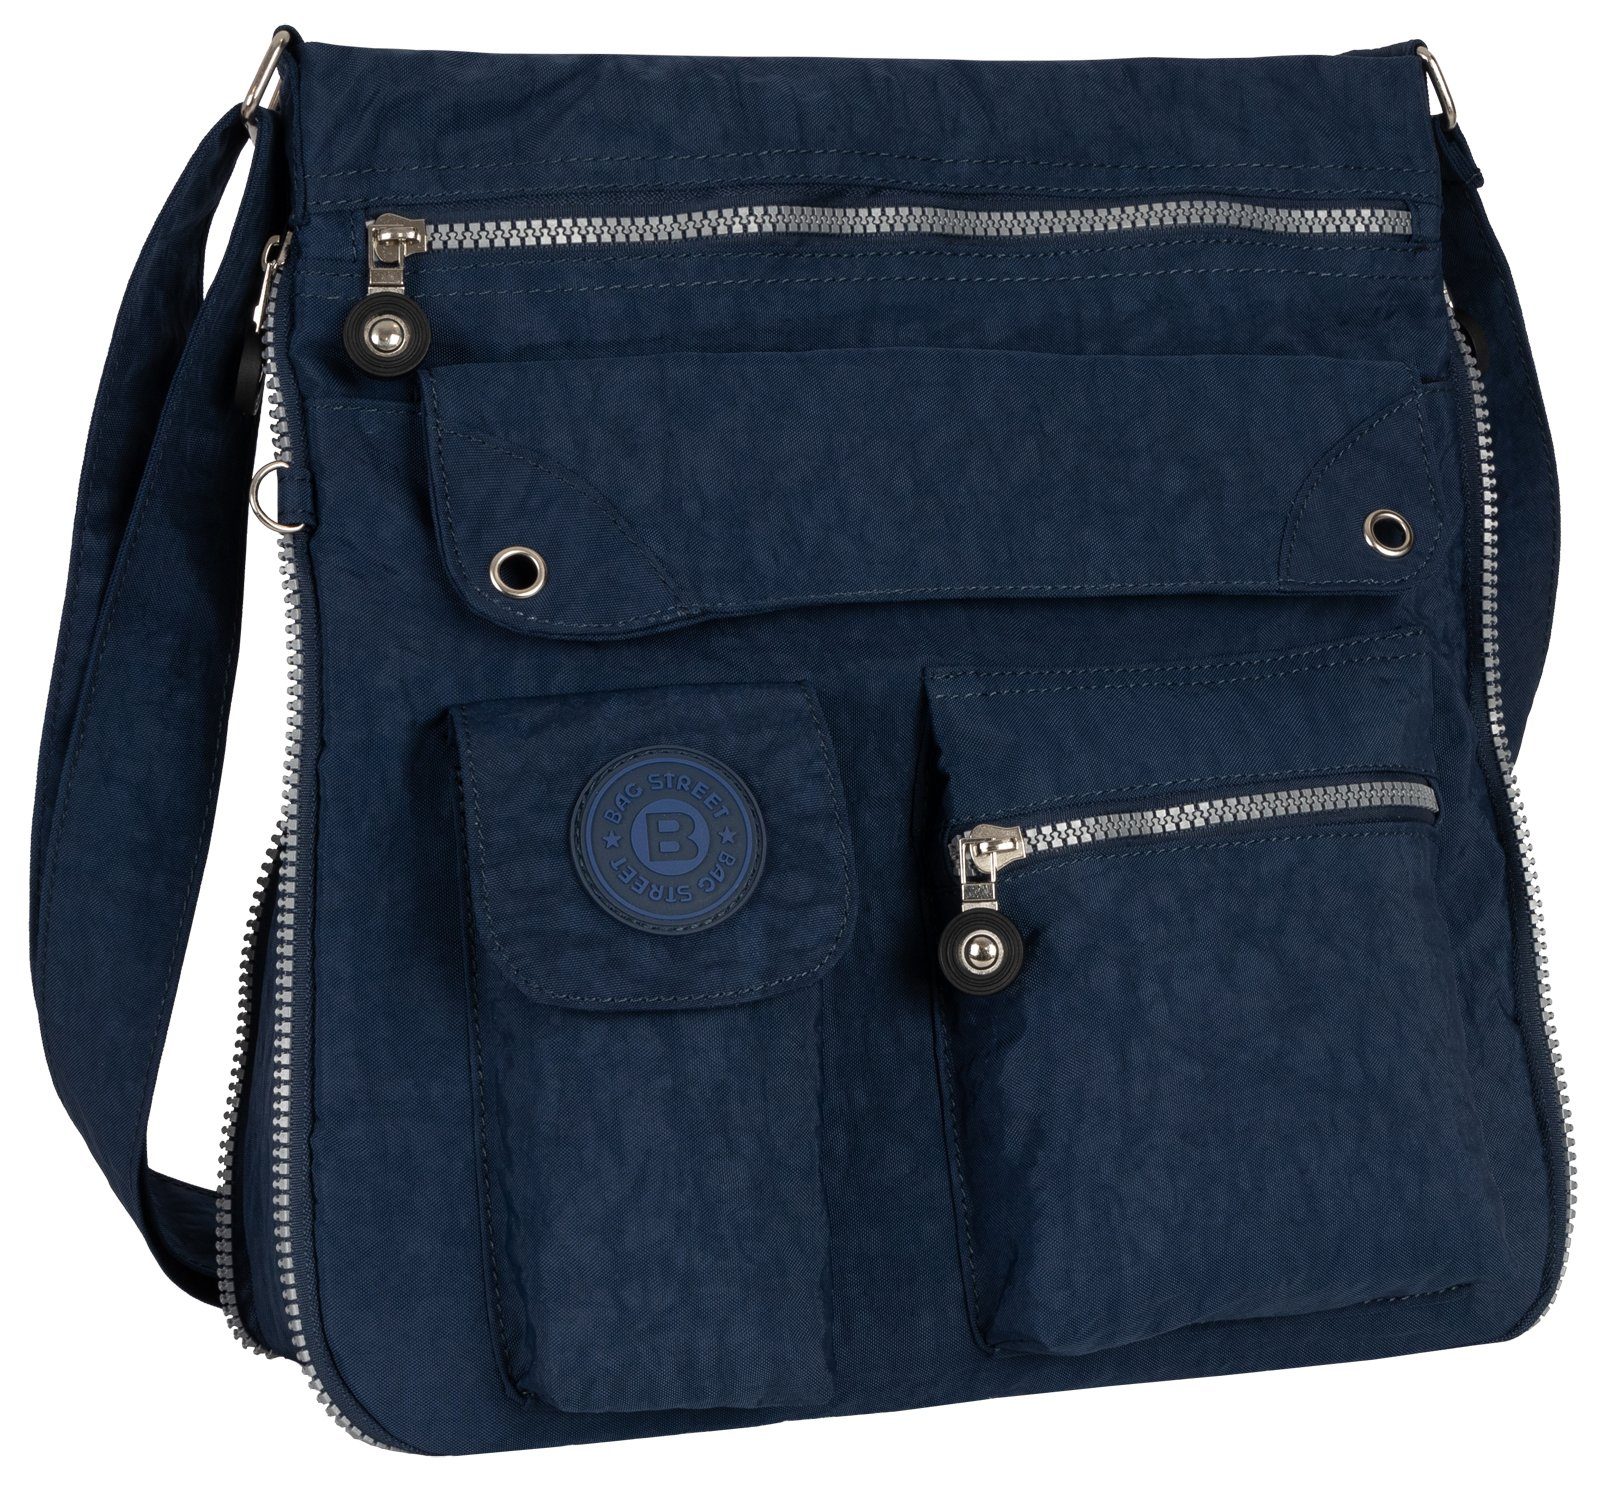 BAG STREET Schlüsseltasche Damentasche Umhängetasche Handtasche Schultertasche Schwarz, als Schultertasche, Umhängetasche tragbar Blau | Schlüsseltaschen